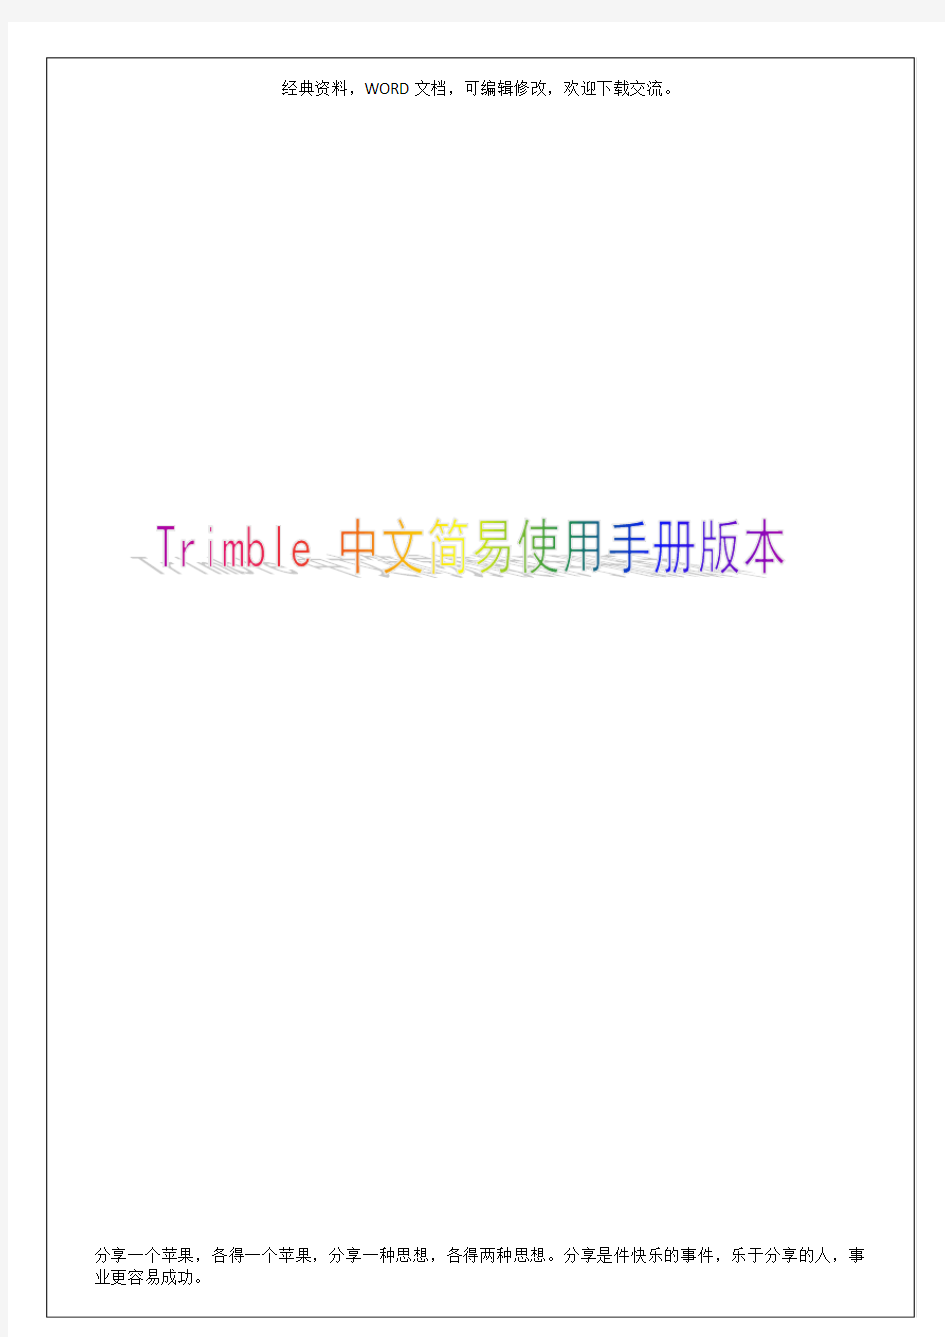 Trimble 中文简易使用手册版本35p